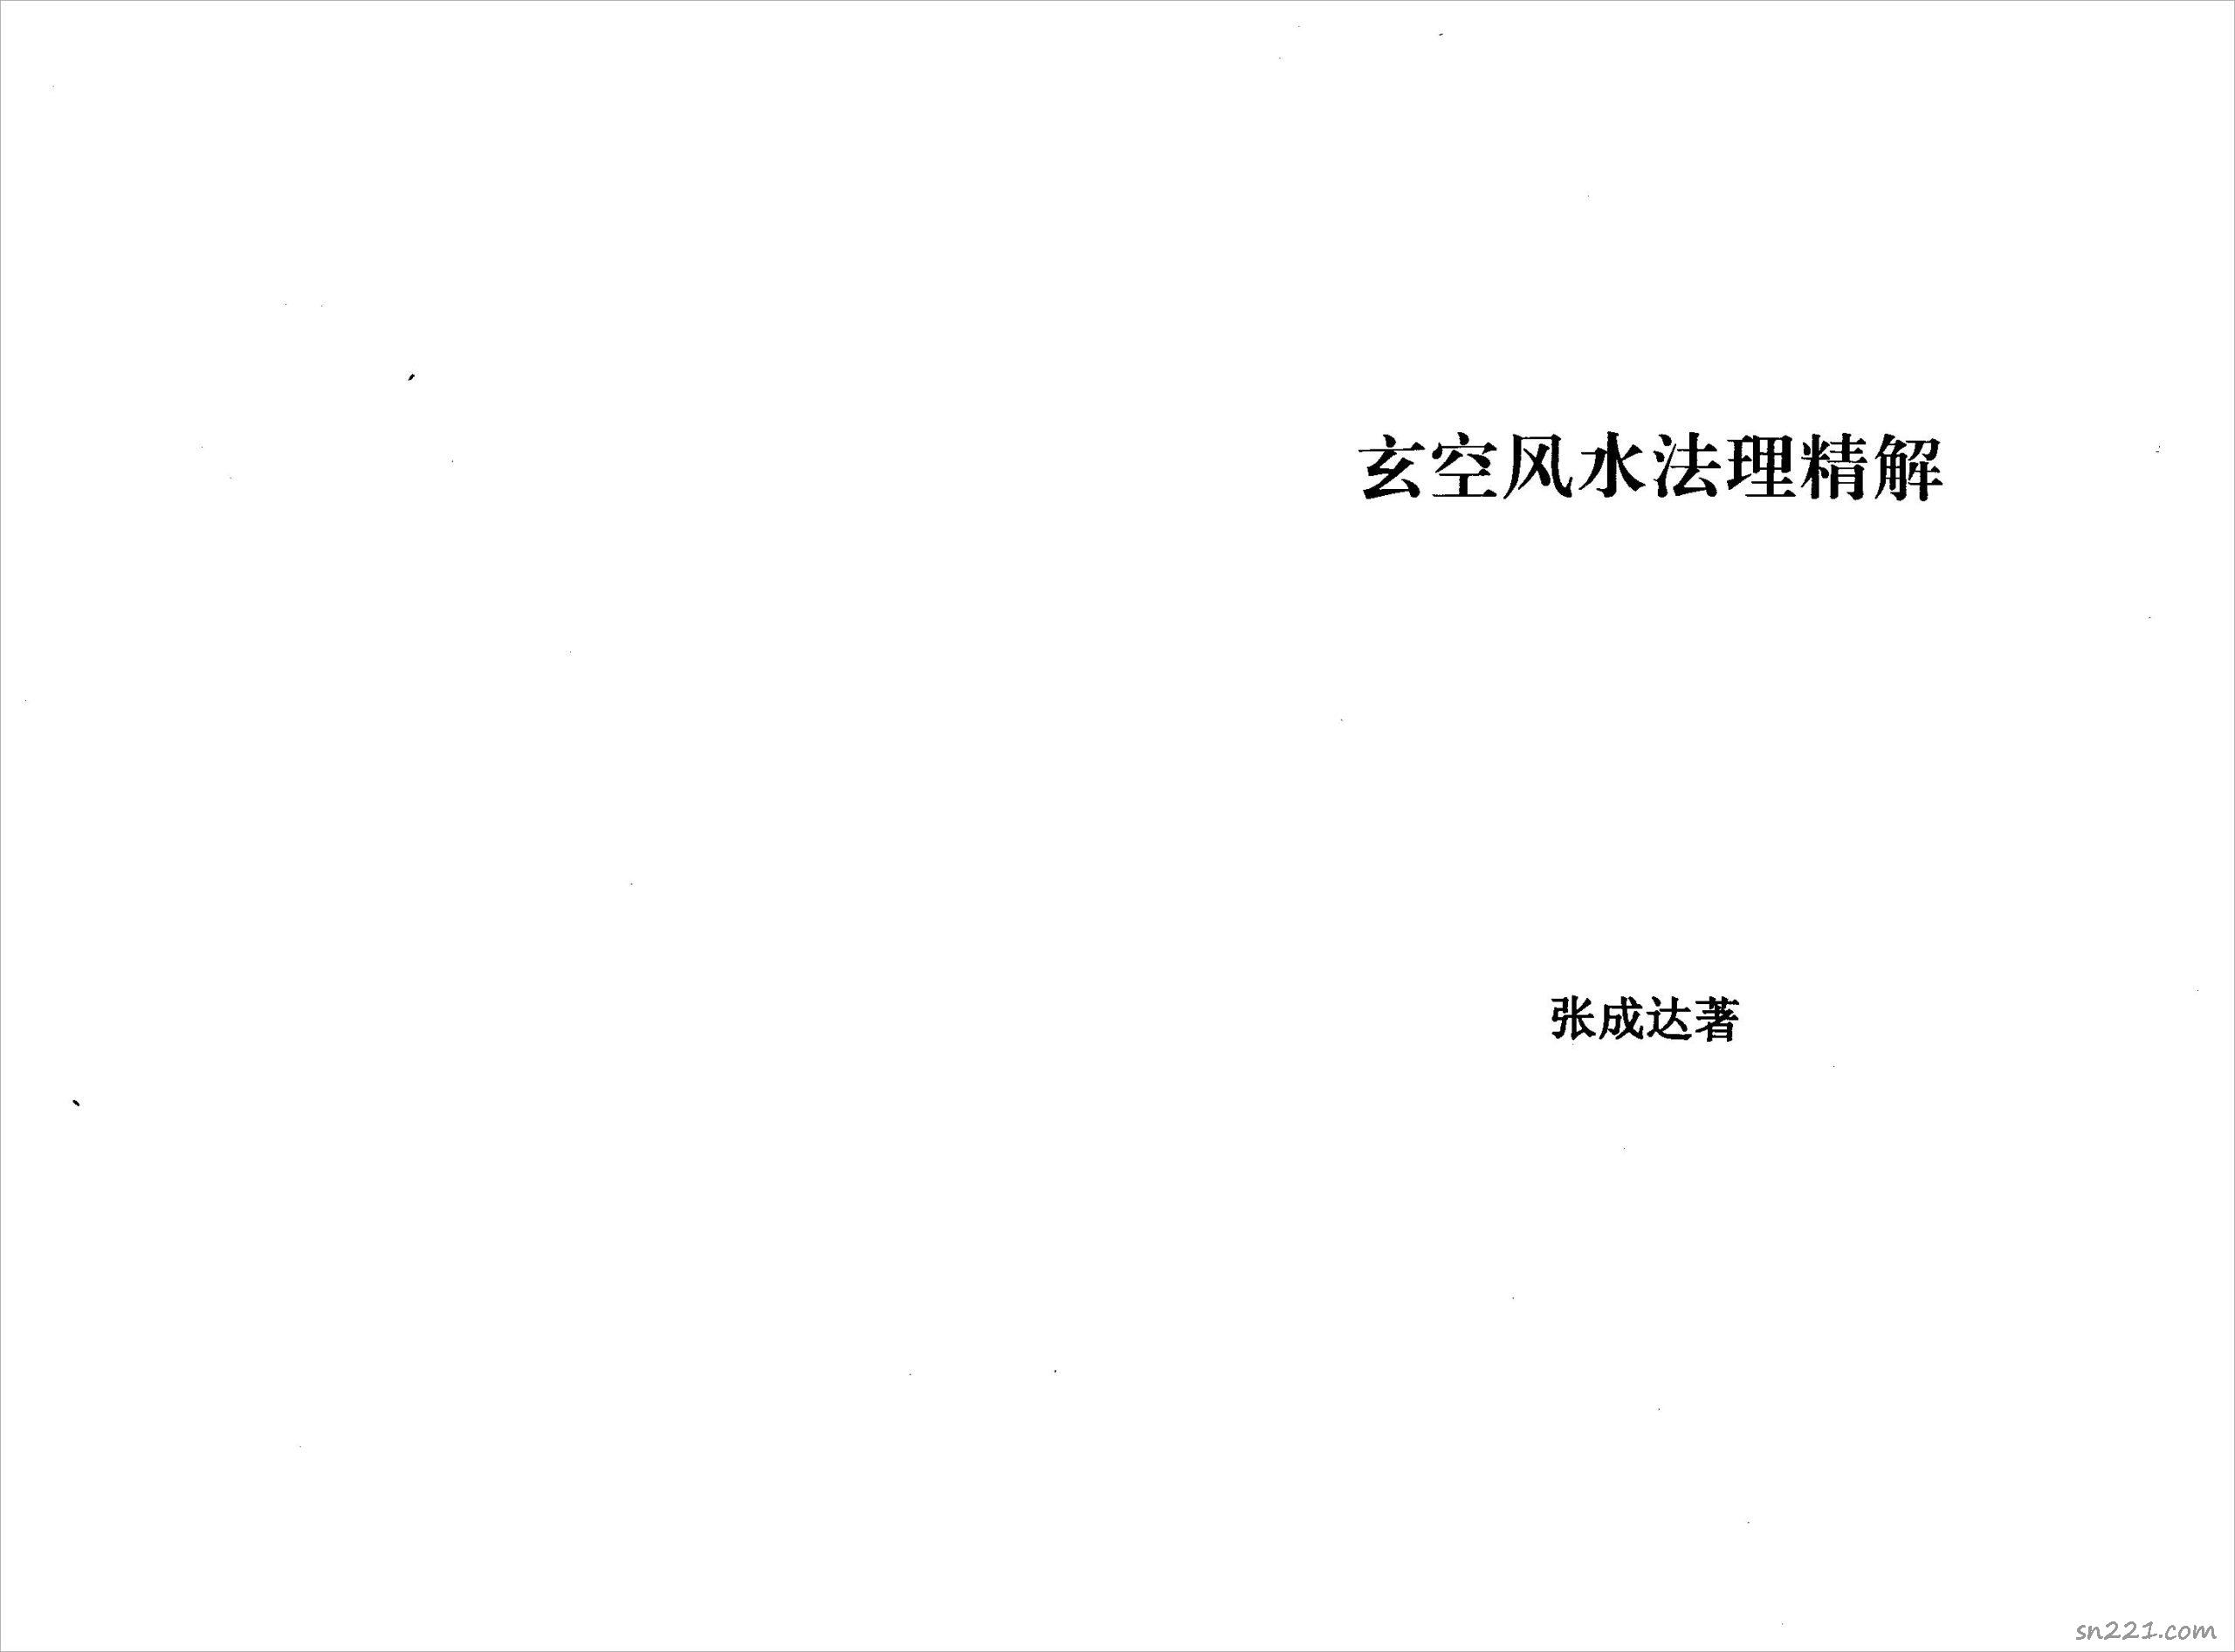 張成達-玄空風水法理精解.pdf